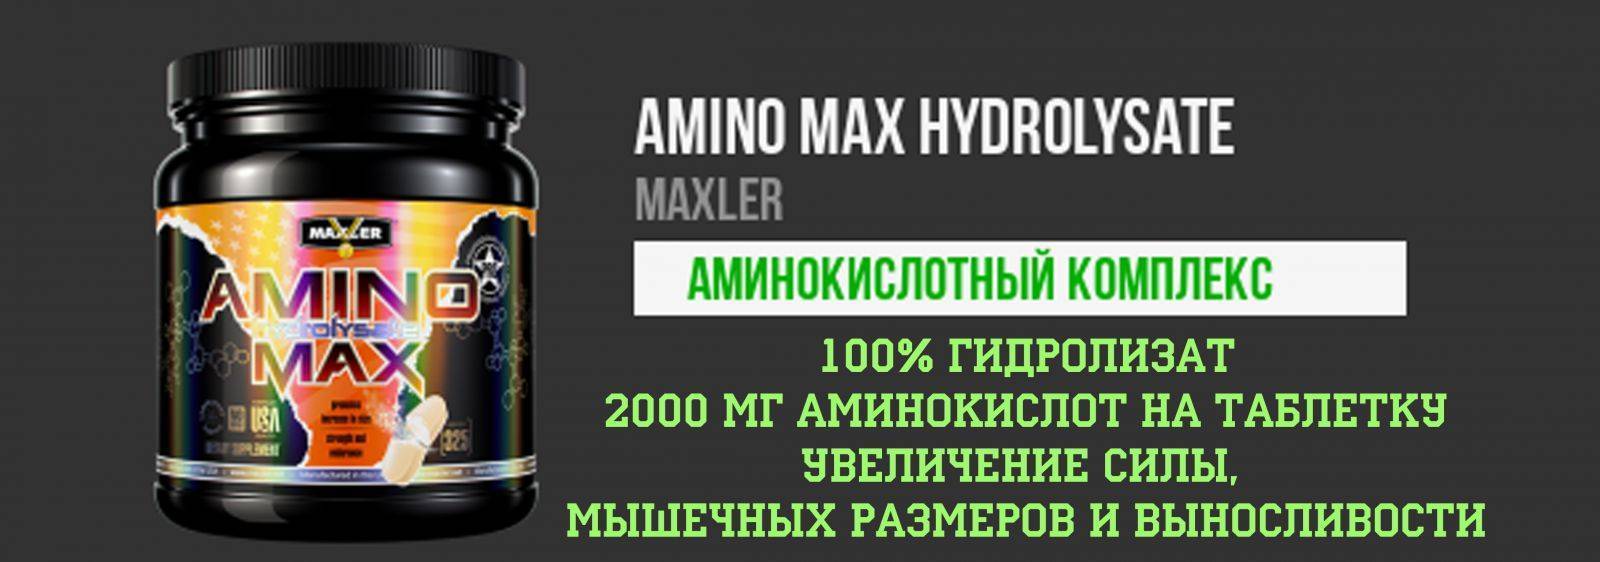 Amino max hydrolysate от maxler: как принимать, состав и отзывы